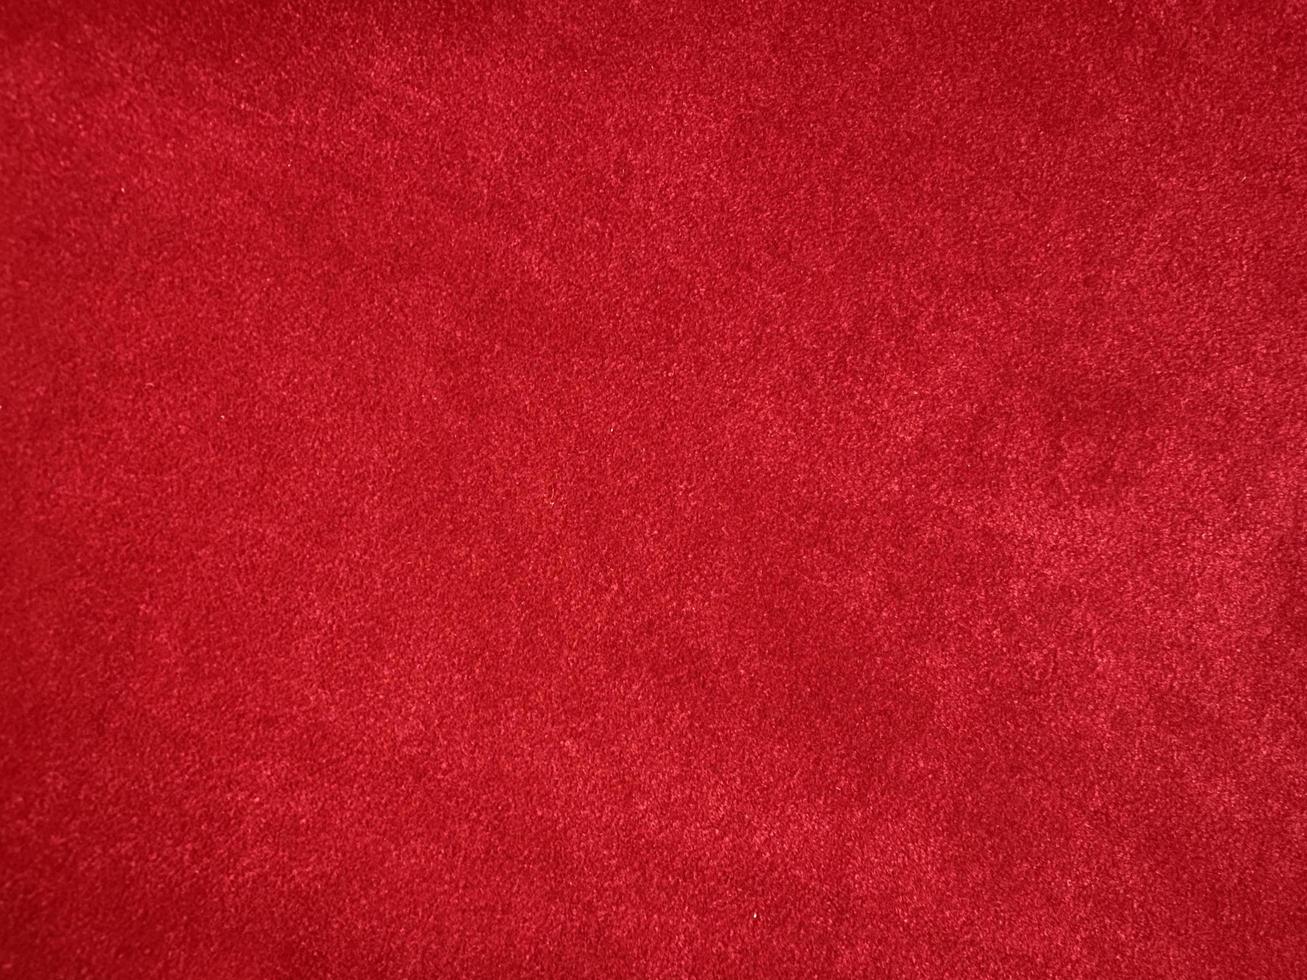 textura de tela de terciopelo rojo oscuro utilizada como fondo. fondo de tela roja vacía de material textil suave y liso. hay espacio para texto. año nuevo chino, san valentín foto